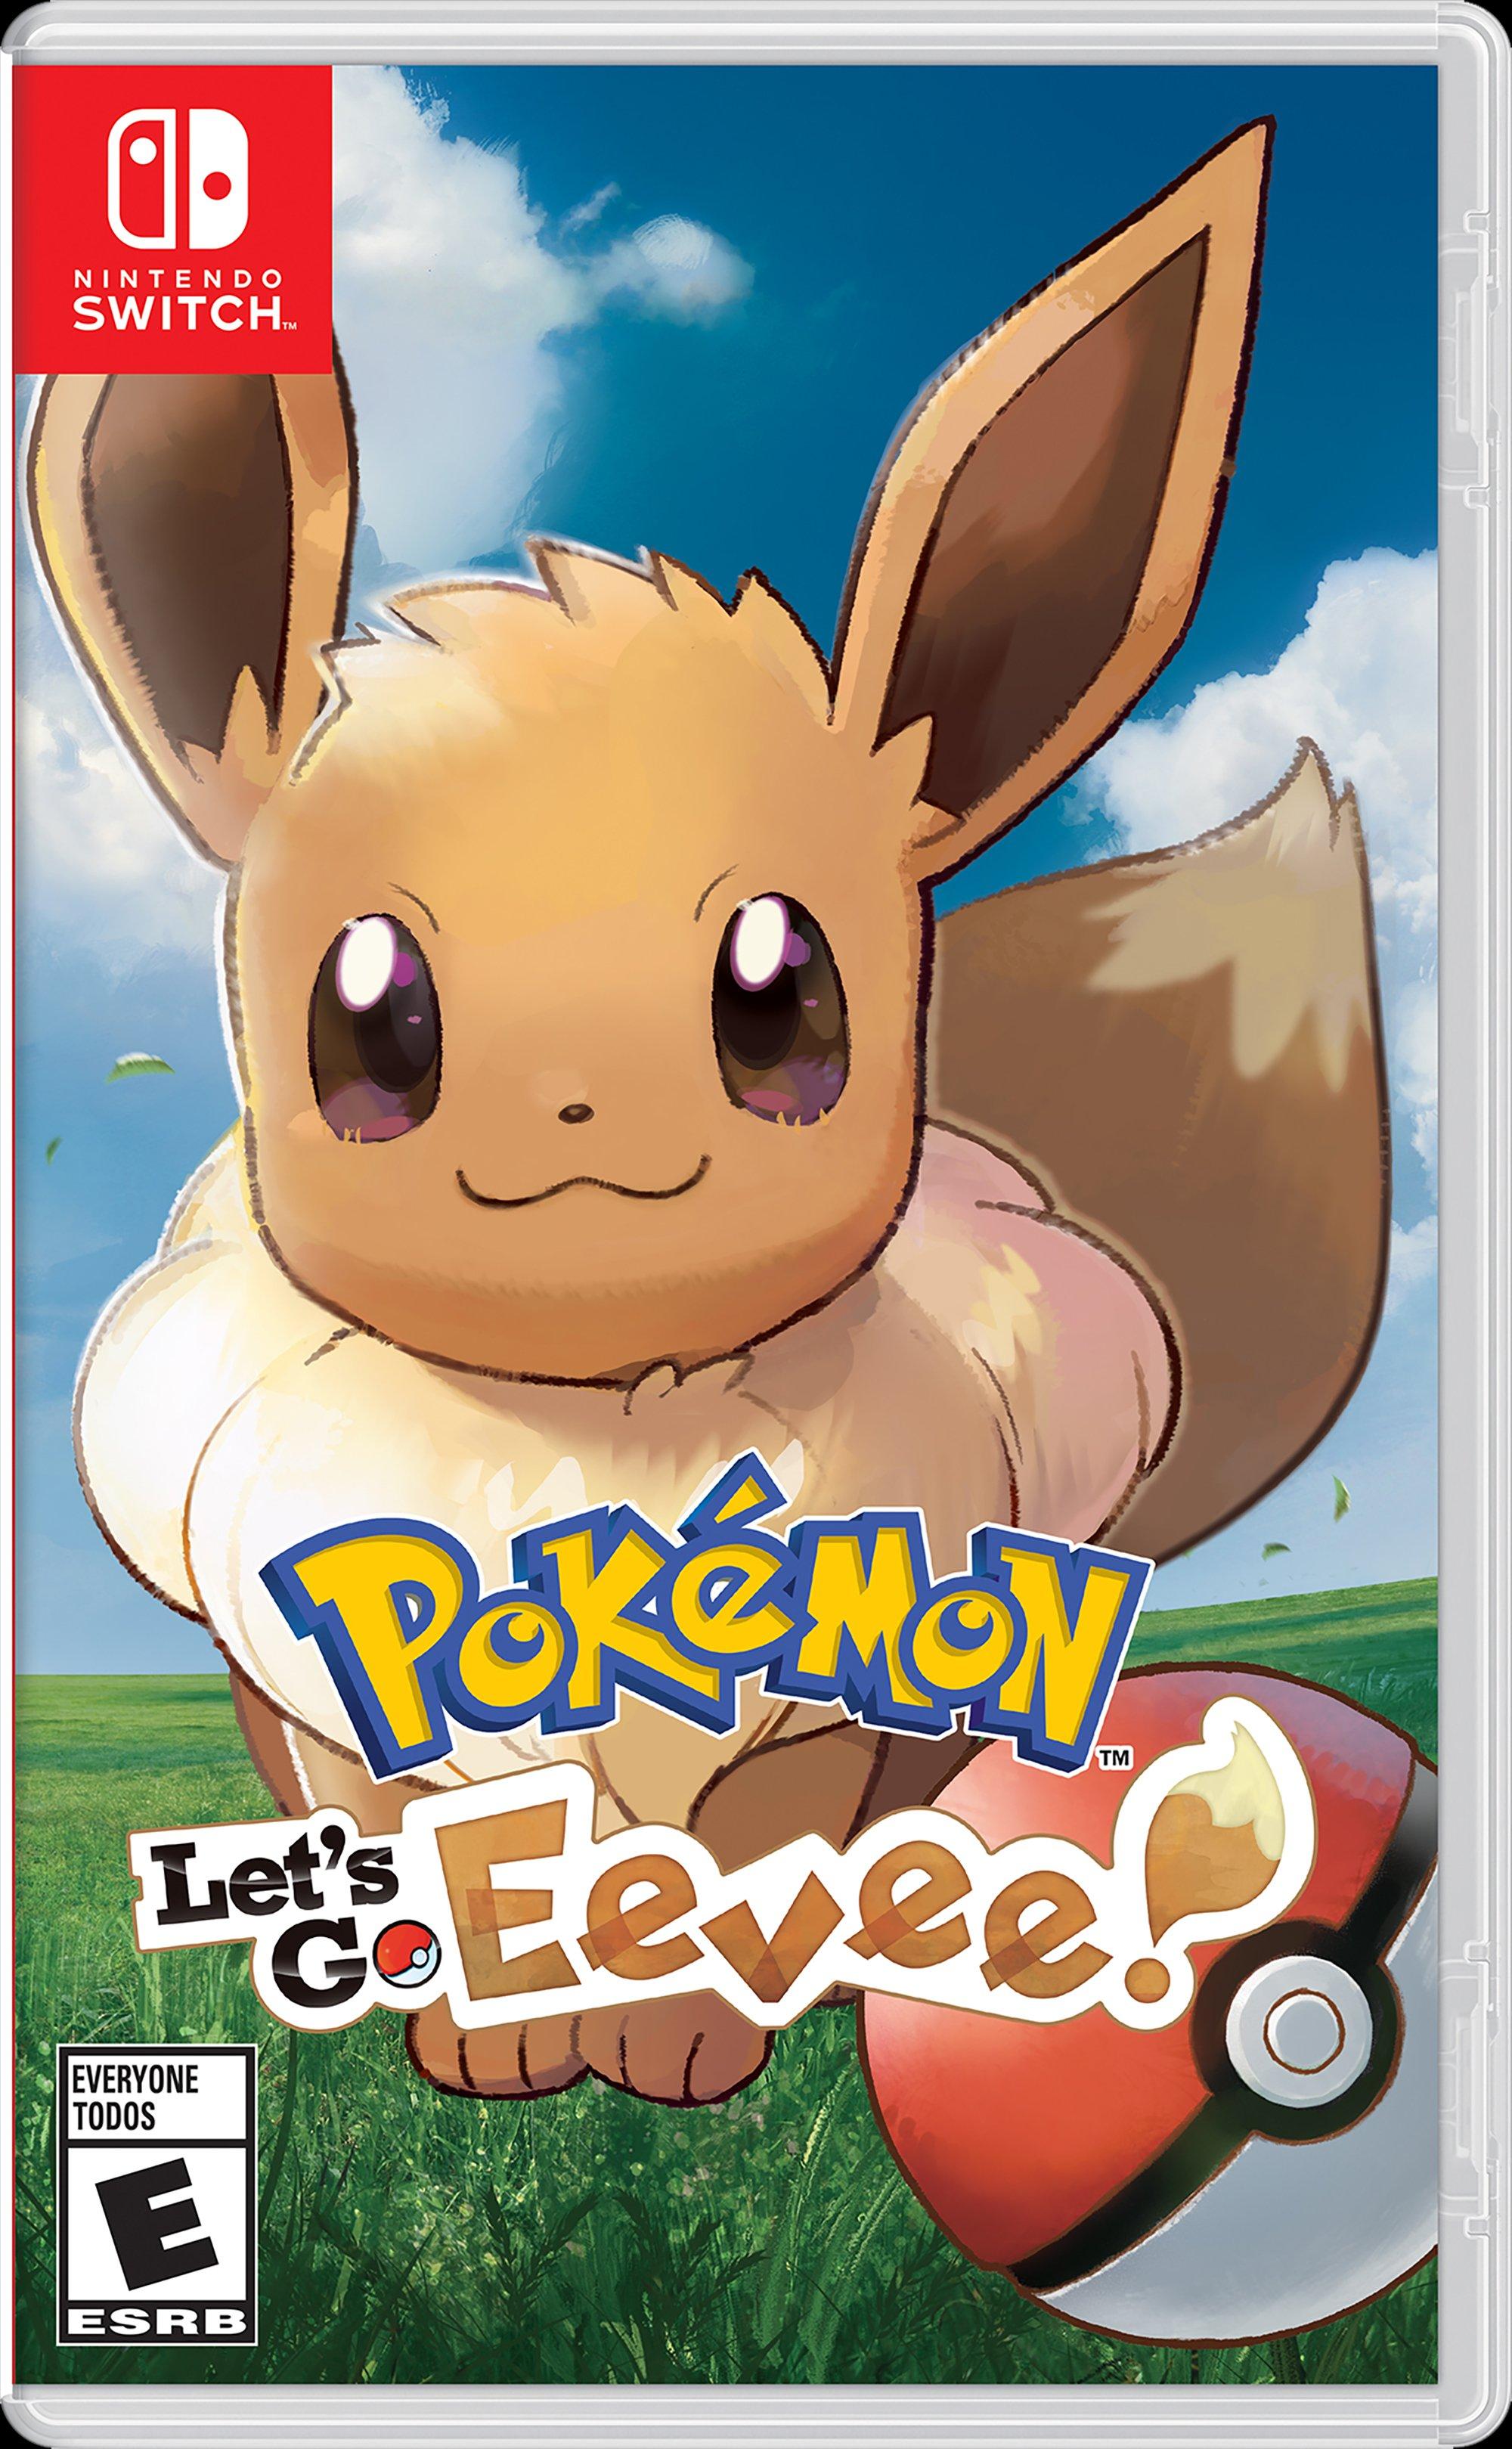 pokemon let's go eevee media markt